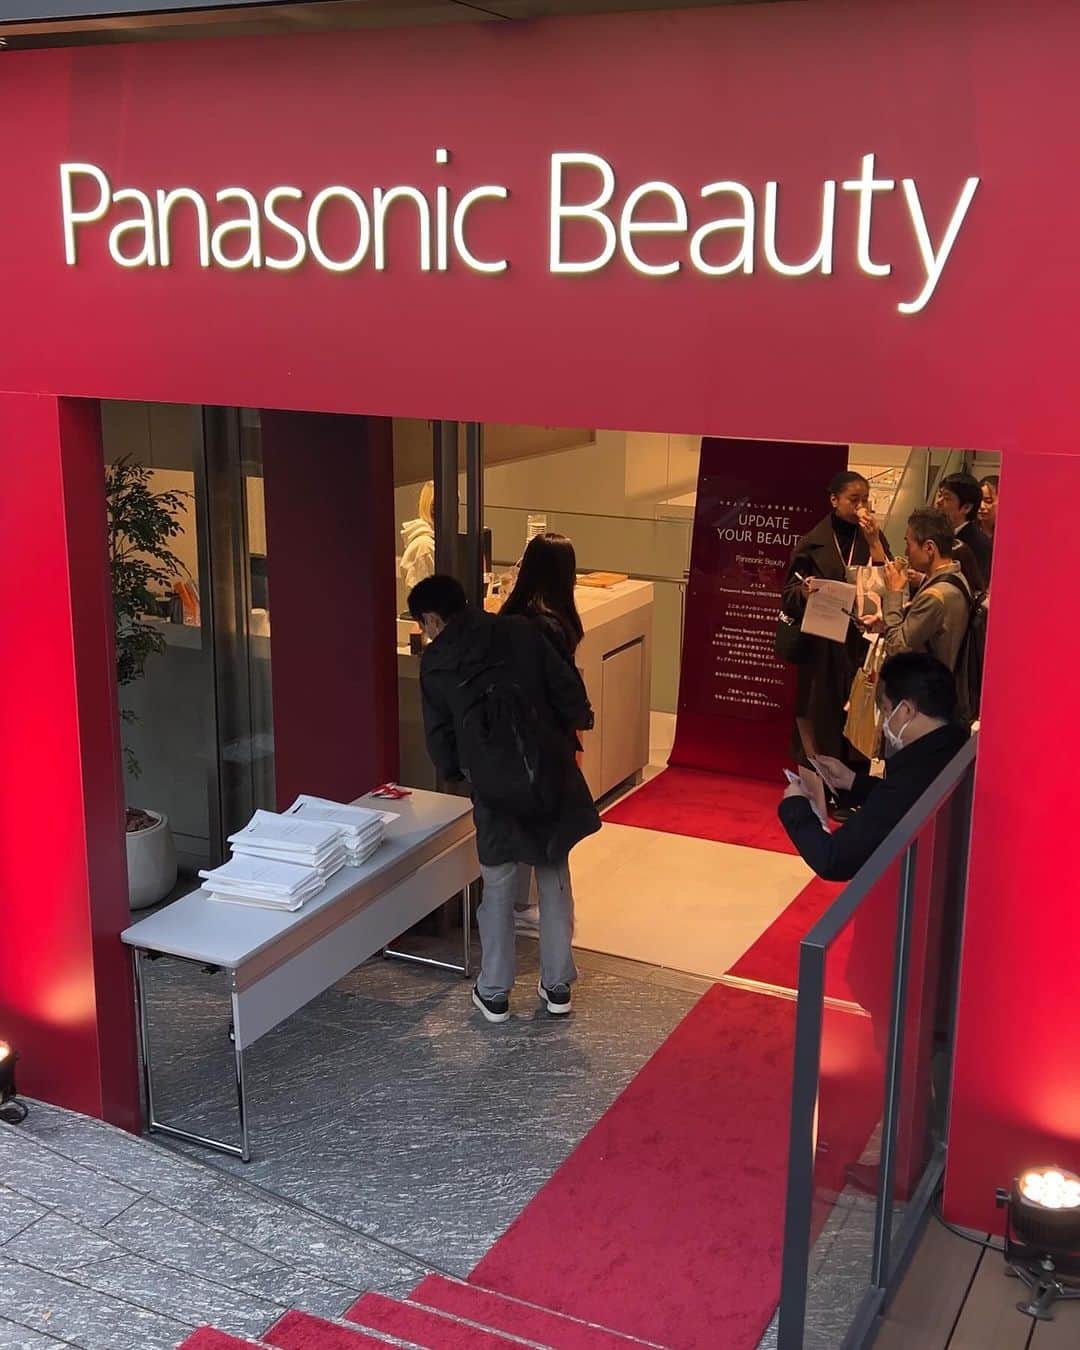 Domani編集部公式アカウントのインスタグラム：「Panasonic Beauty OMOTESANDOで現在開催中のホリデーシーズン限定イベント「今年より美しい来年を贈ろう。UPDATE YOUR BEAUTY」に行ってきました🎄✨  こちらではパナソニックの人気美容機器や分析ツールが体験できます。今なら期間限定で、2つのコースが体験できるキャンペーンも実施中💖  ＼期間限定2つのコース／ ◆SPECIALコース（当日予約制・所要時間約60分） まずは肌＆ヘア分析で自分のコンディションを確認。美容のプロであるコンシェルジュが、1対1で自分に合った最新のビューティケアを提案！ 美容機器やコスメを使って、40分間じっくりとお試し体験をすることもできます✨  ◆QUICKコース（予約不要・所要時間約15分） タブレットで簡単な質問に答えるだけで、肌悩みに合う美容アイテムを提案してくれます！オススメされたアイテムはもちろん、パナソニックの美容機器を自由に試せるスタンディング体験コーナーが嬉しい❤️  ホリーデーシーズン限定の店内はクリスマス仕様で、幻想的なフォトスポットも登場。特別仕様のツリーにオーナメントの飾り付けをすることもできます🎄ホリデー気分が高まる空間で、今年1年頑張った自分の肌やヘアにもご褒美をあげませんか？  編集部・阿部はパナソニック独自の分析ツール「髪キレイ」を体験！写真を撮るだけで髪の状態を詳しく分析してくれます。なんと自分では気づかなかった髪のうねりが…。というわけで、早速ヘアケアアイテムを物色中。ケア見直しのいいきっかけになってくれました♪美容モチベがアップすること間違いなし。  入場無料なので、表参道にいらした際はぜひ立ち寄ってみてくださいね。  「今年より美しい来年を贈ろう。UPDATE YOUR BEAUTY」 開催期間：2023年11月30日（木）〜12月30日（土） 会場：東京都渋谷区神宮前4-3-3 バルビゾン7 【営業時間】 月〜木 11：00〜19：00 ※12月25日（月）は20：00まで 金土日 11：00〜20：00 ※12月29日（金)、30日（土）は19：00まで 【予約】 SPECIALコース：当日受付にて整理券を配布 QUICKコース：予約不要  #パナソニック#パナソニックビューティ #パナソニックビューティ表参道 #表参道 #updateyourbeauty #Panasonic#Panasonicbeauty#ヘアドライヤー #ヘアケア #スキンケア #クリスマス #クリスマスイベント」